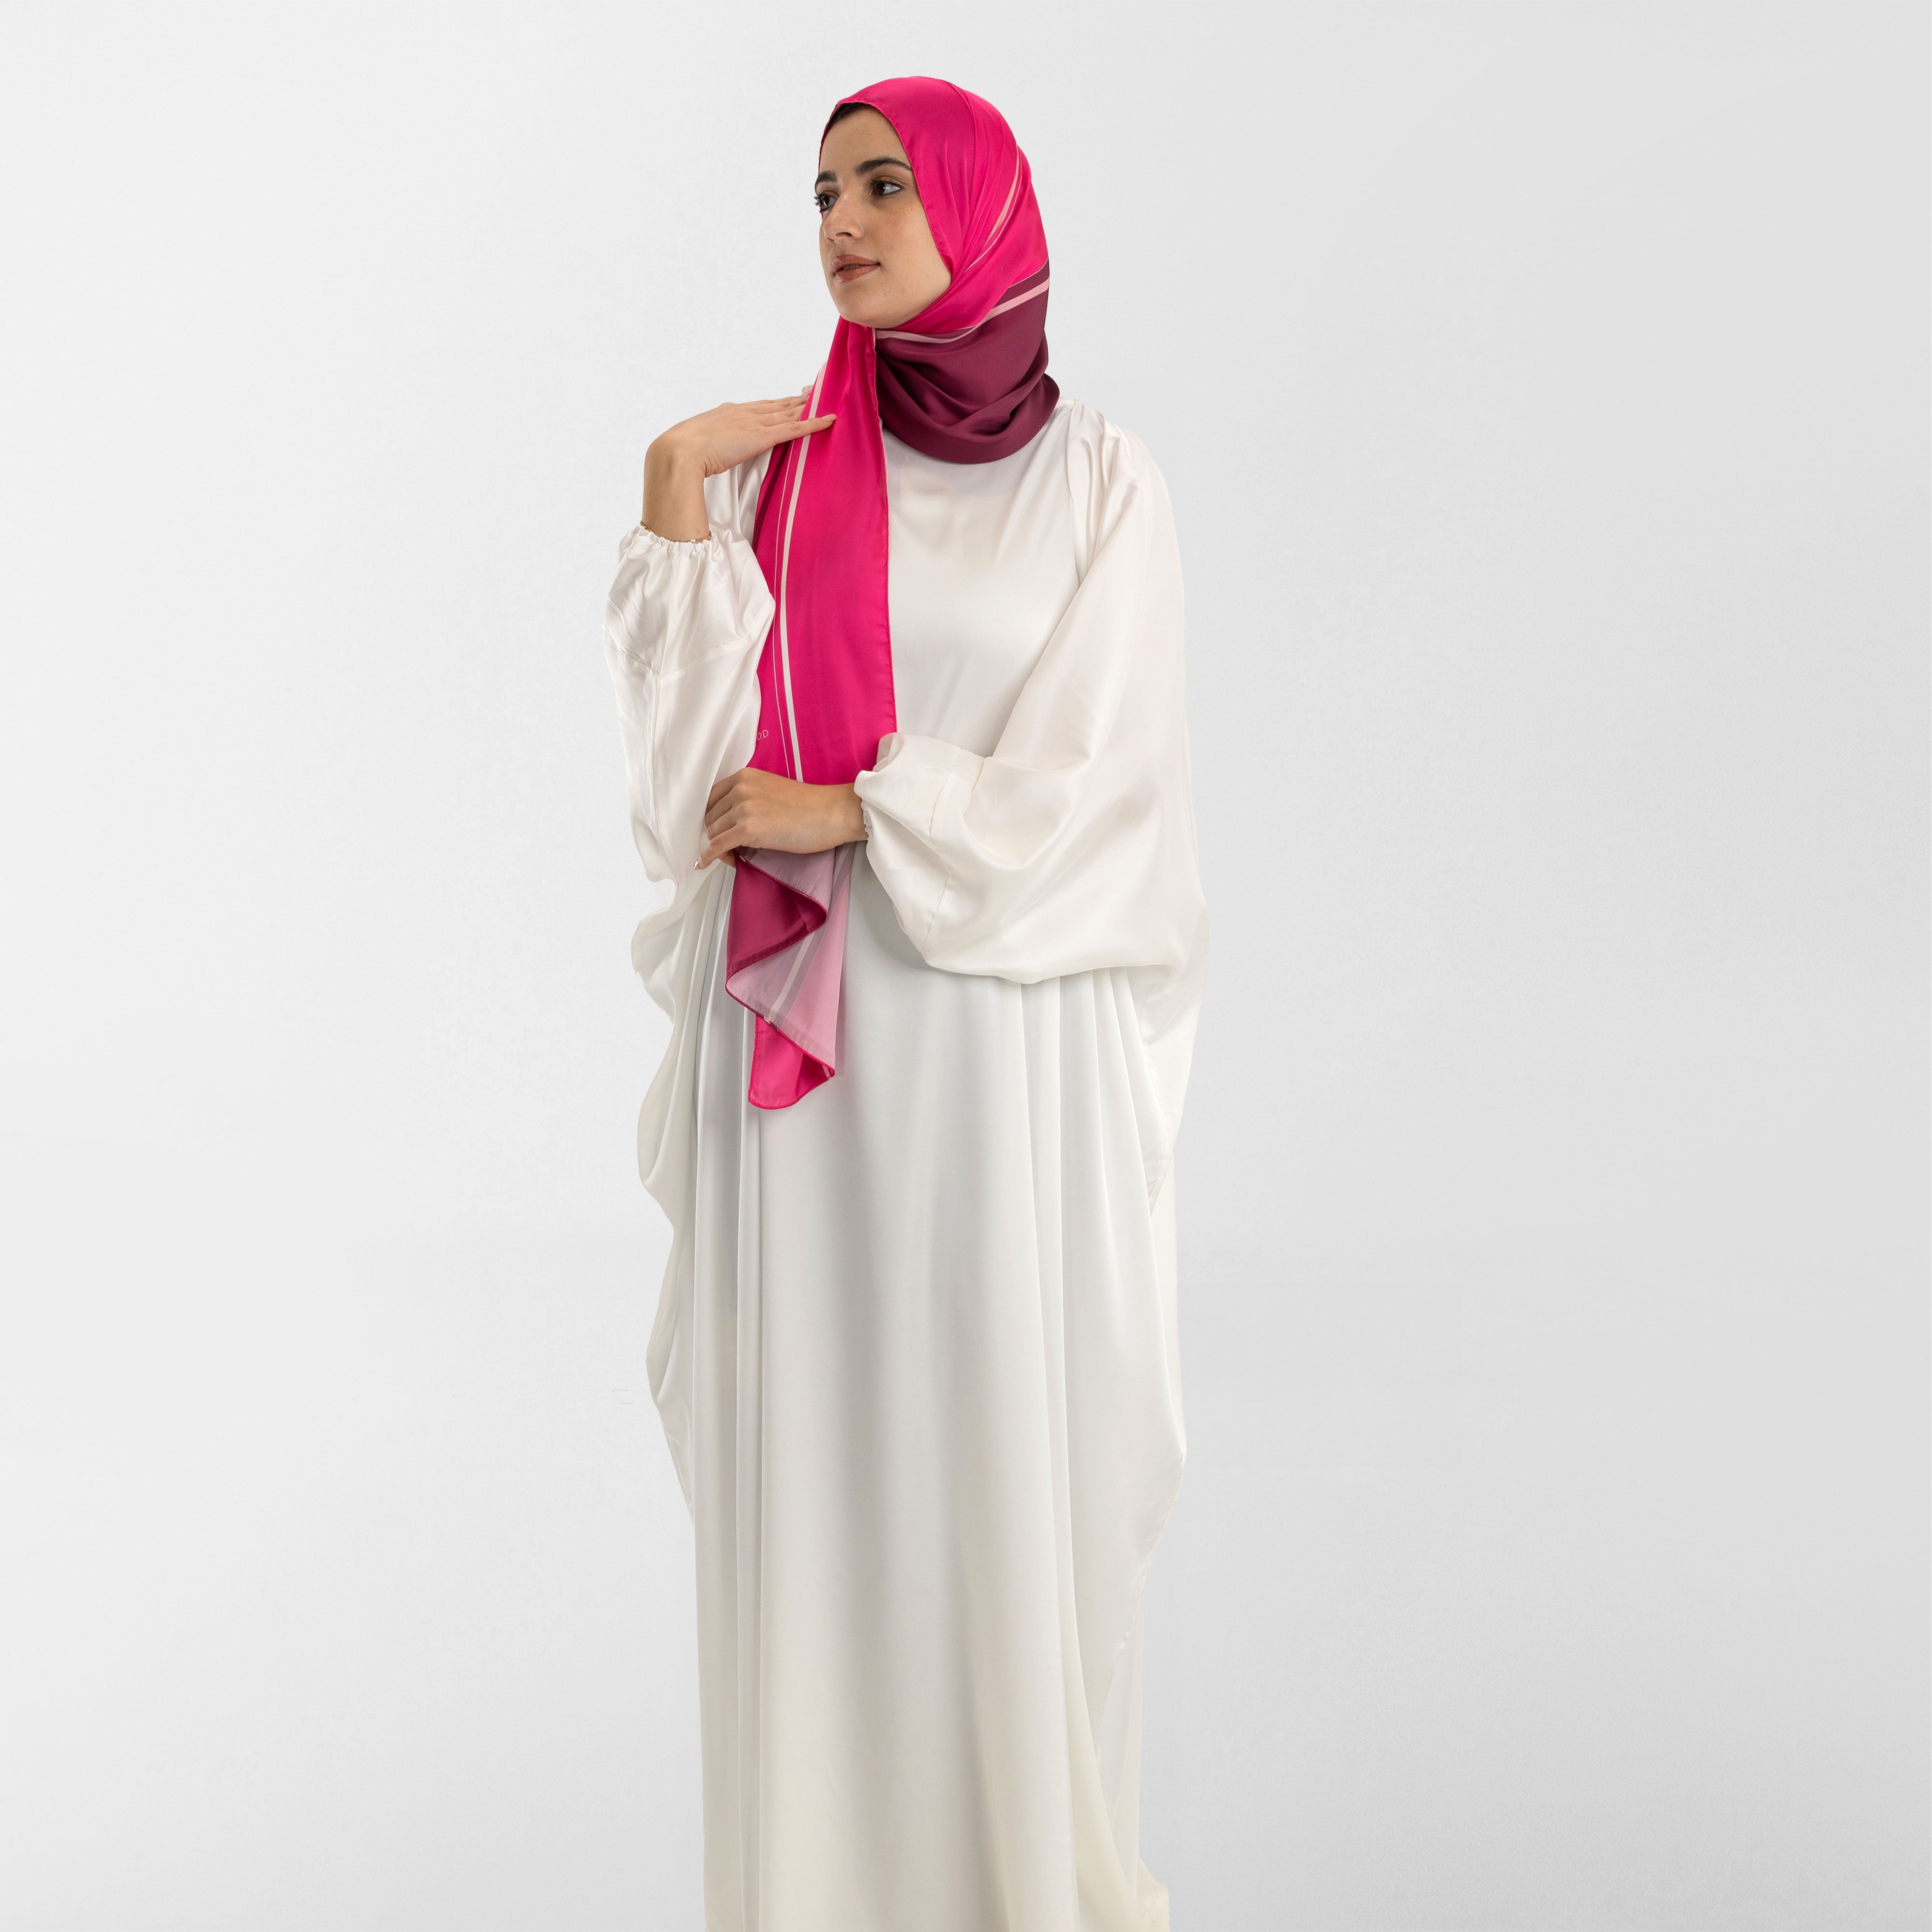 Prayer Wear - Isdal AL-TAQWA PINK